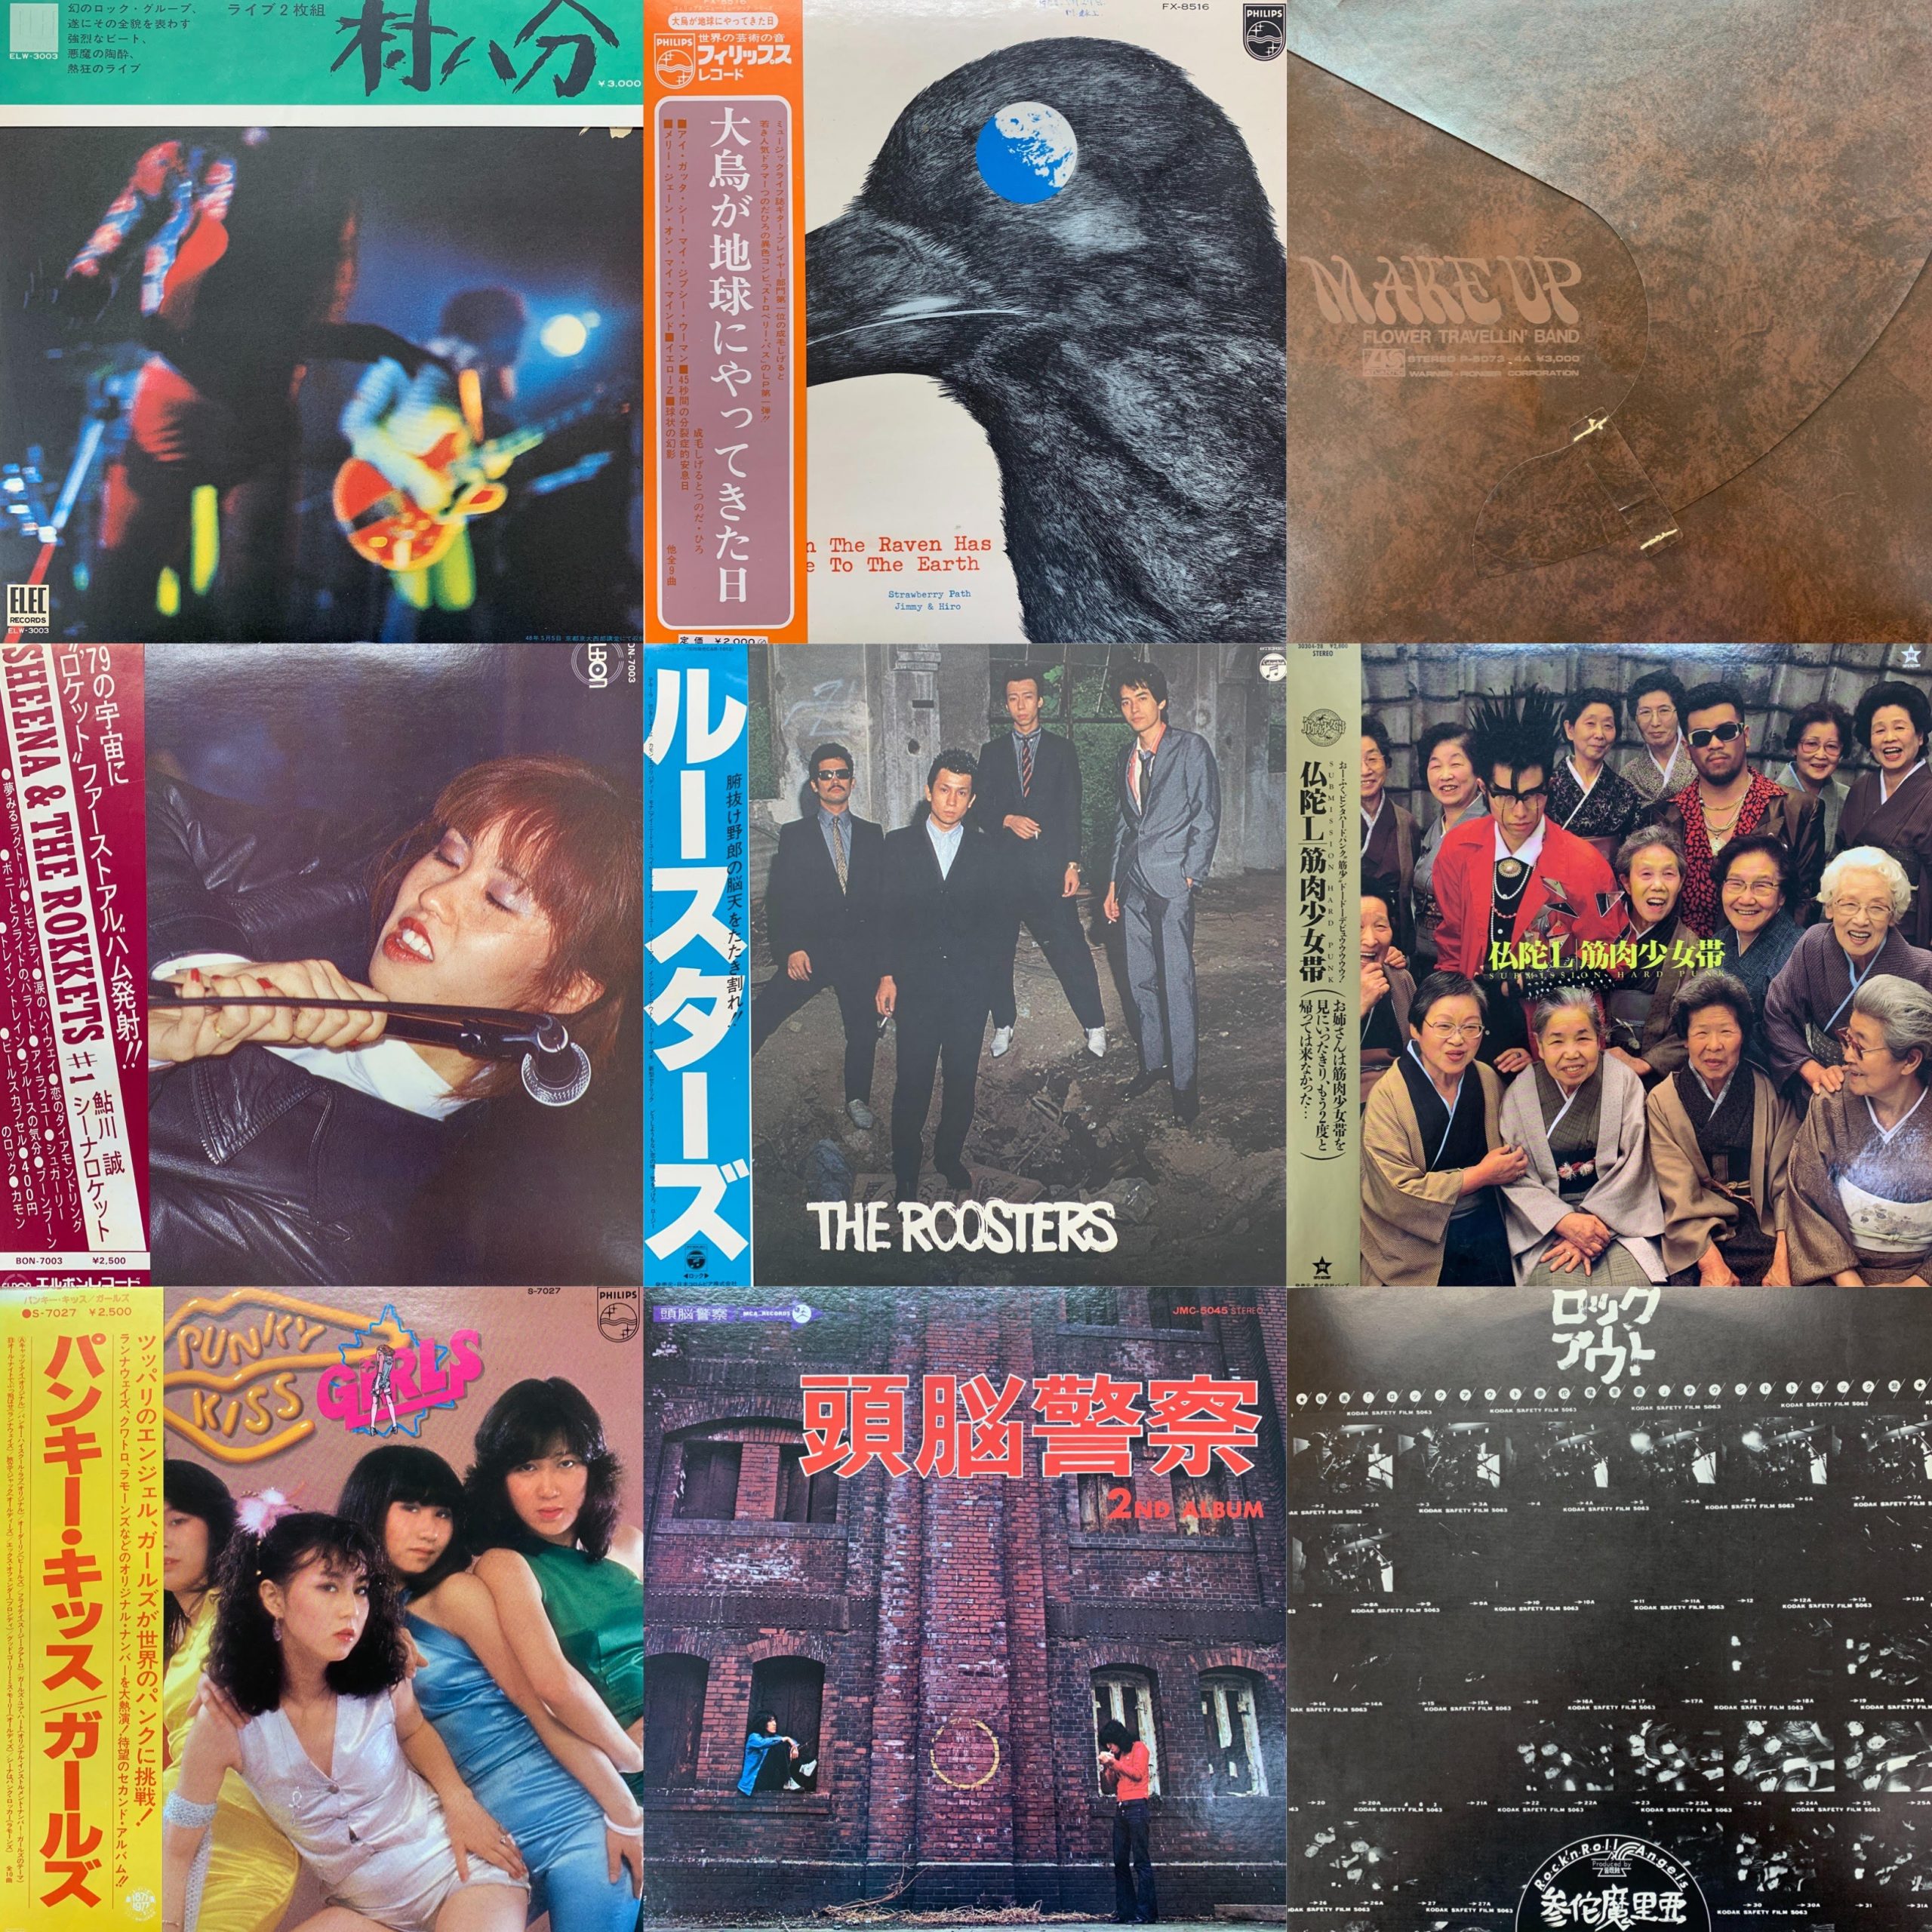 ストロベリー パスや極稀少 村八分の稀少初版帯付き盤 中古レコード大放出 7 5 日 Japanese Rock Punk Lp Sale General Record Store